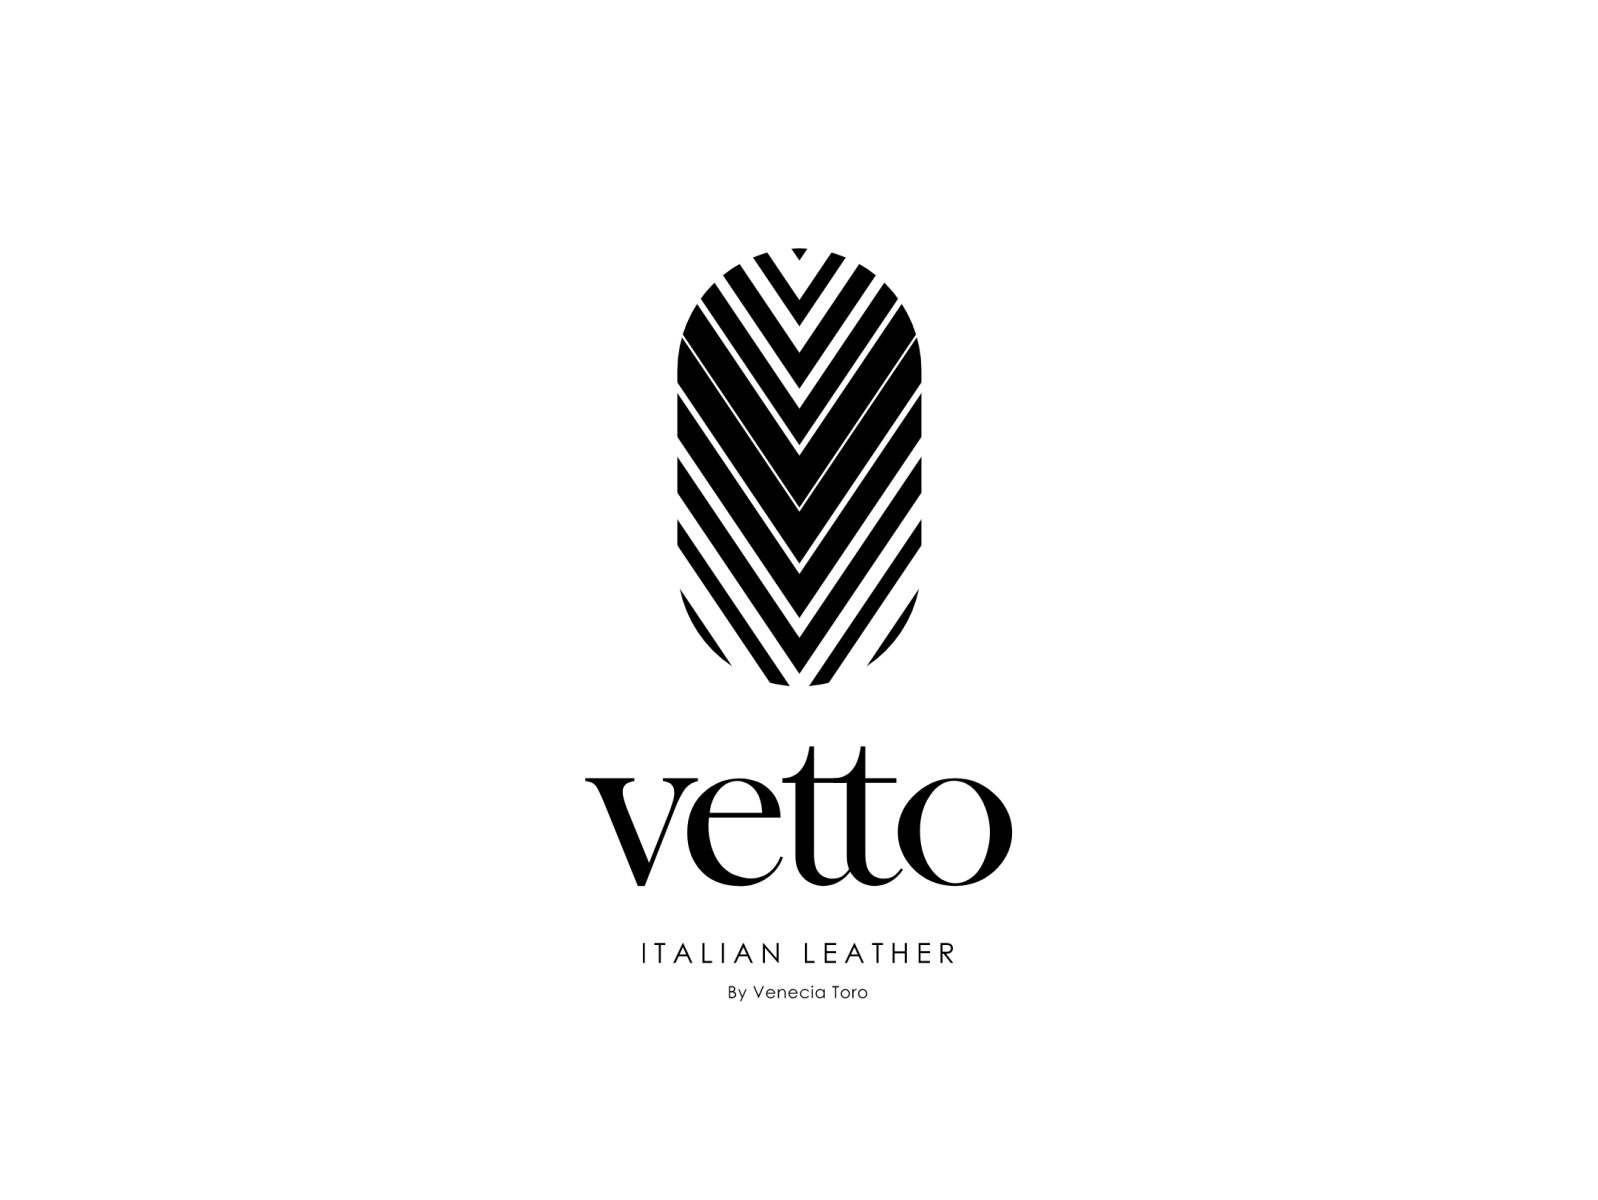 Vetto Italian Leather By Majid Rangraz On Dribbble